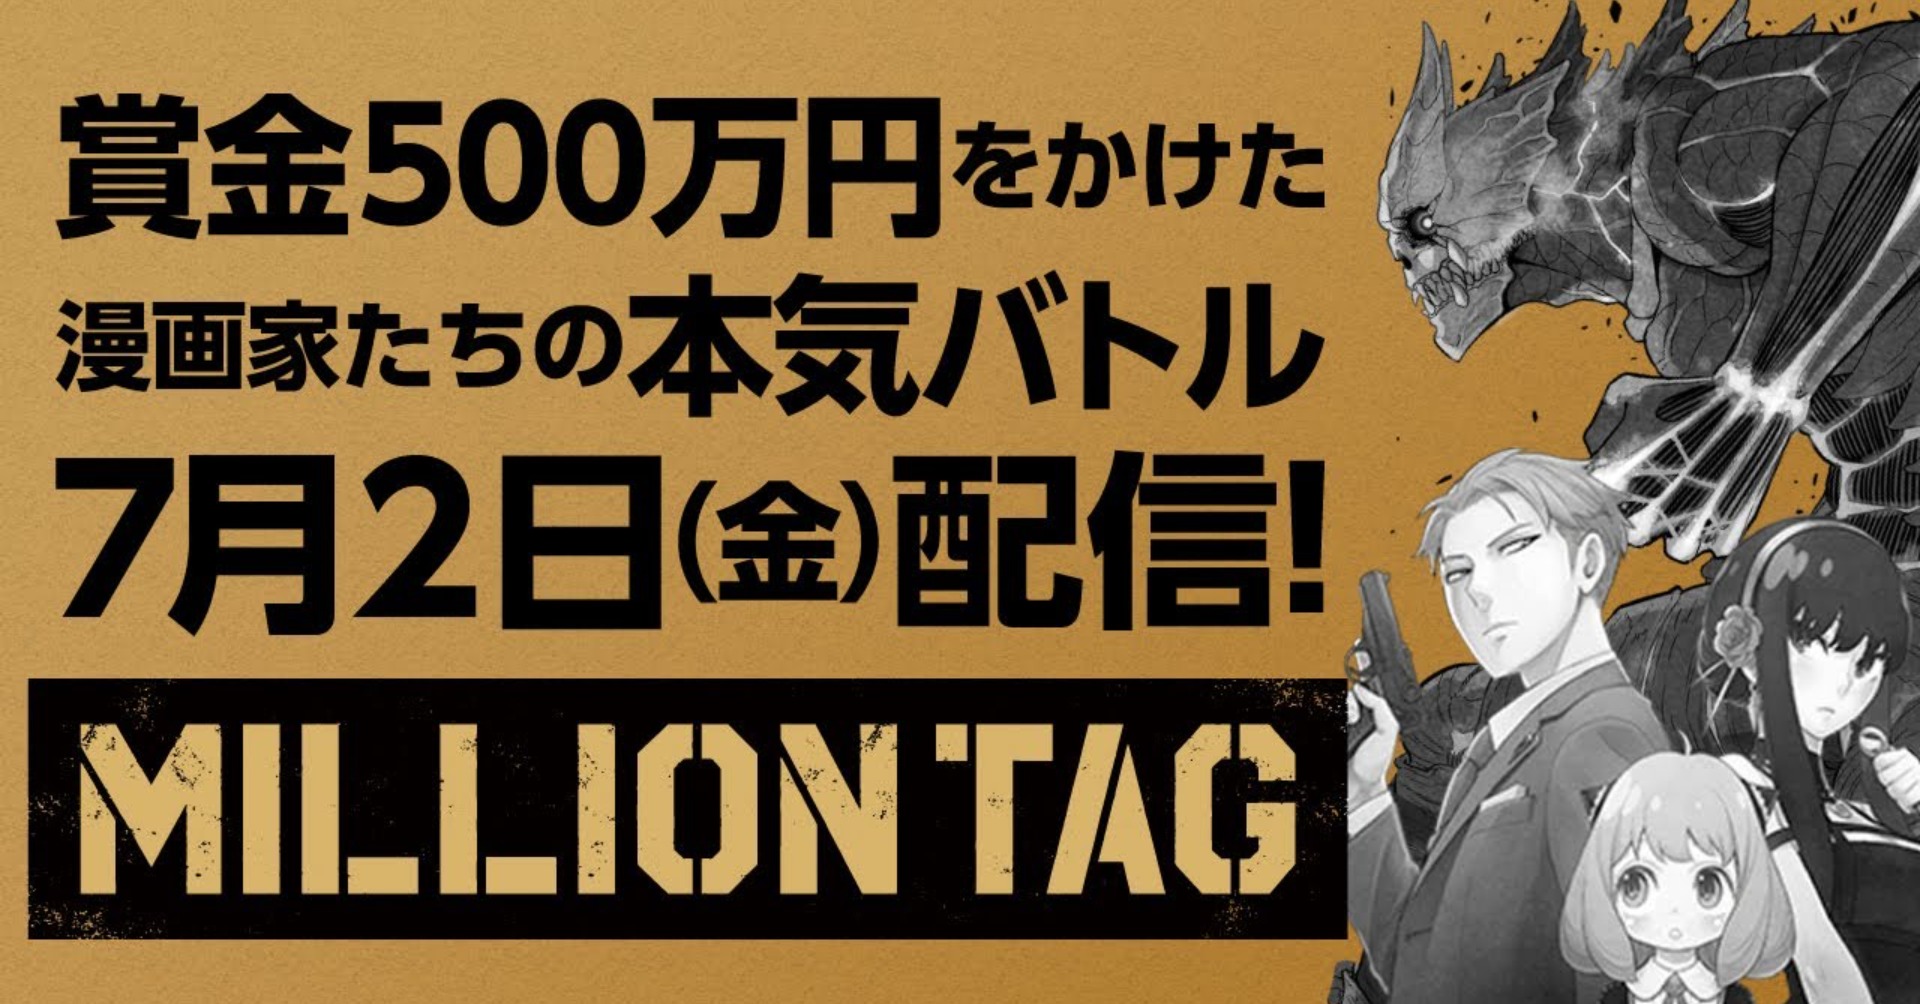 Shonen Jump + Million Tag header